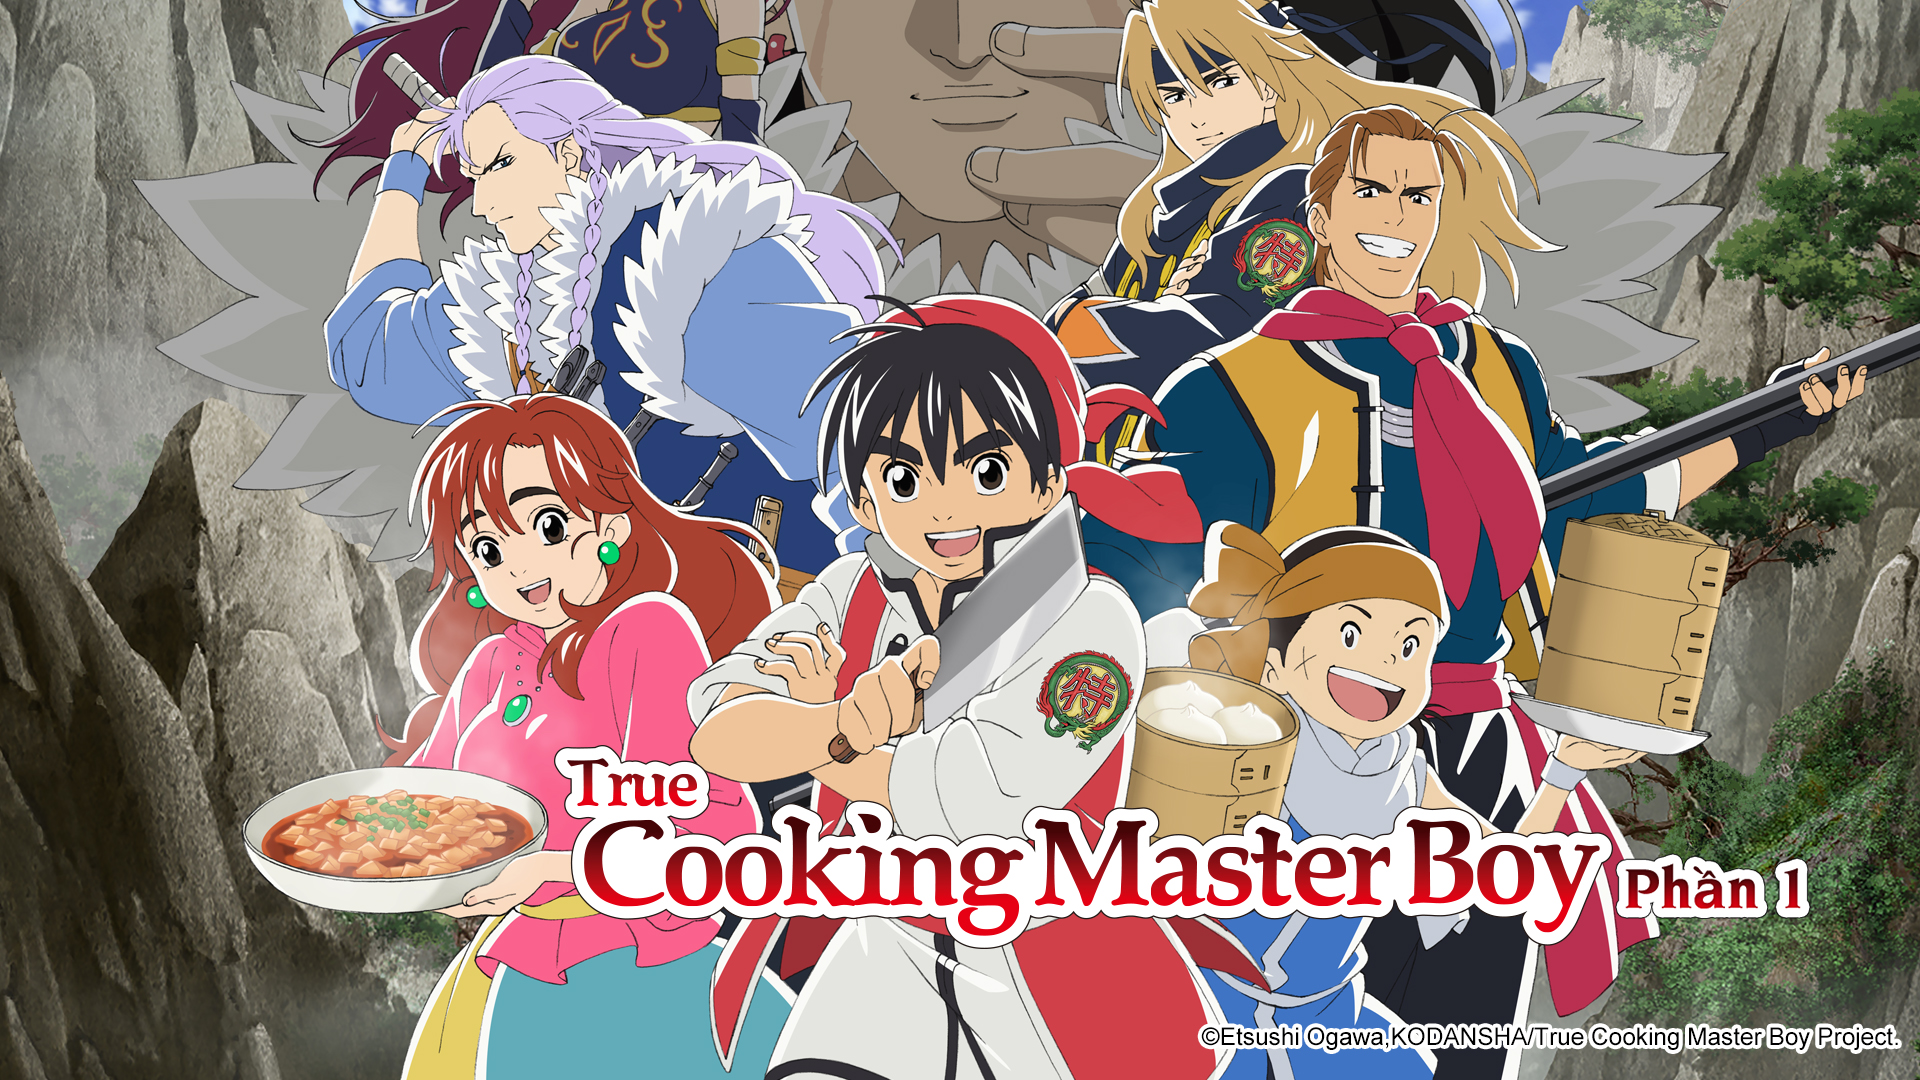 8. Phim True Cooking Master Boy - Đầu bếp thiên tài thực thụ